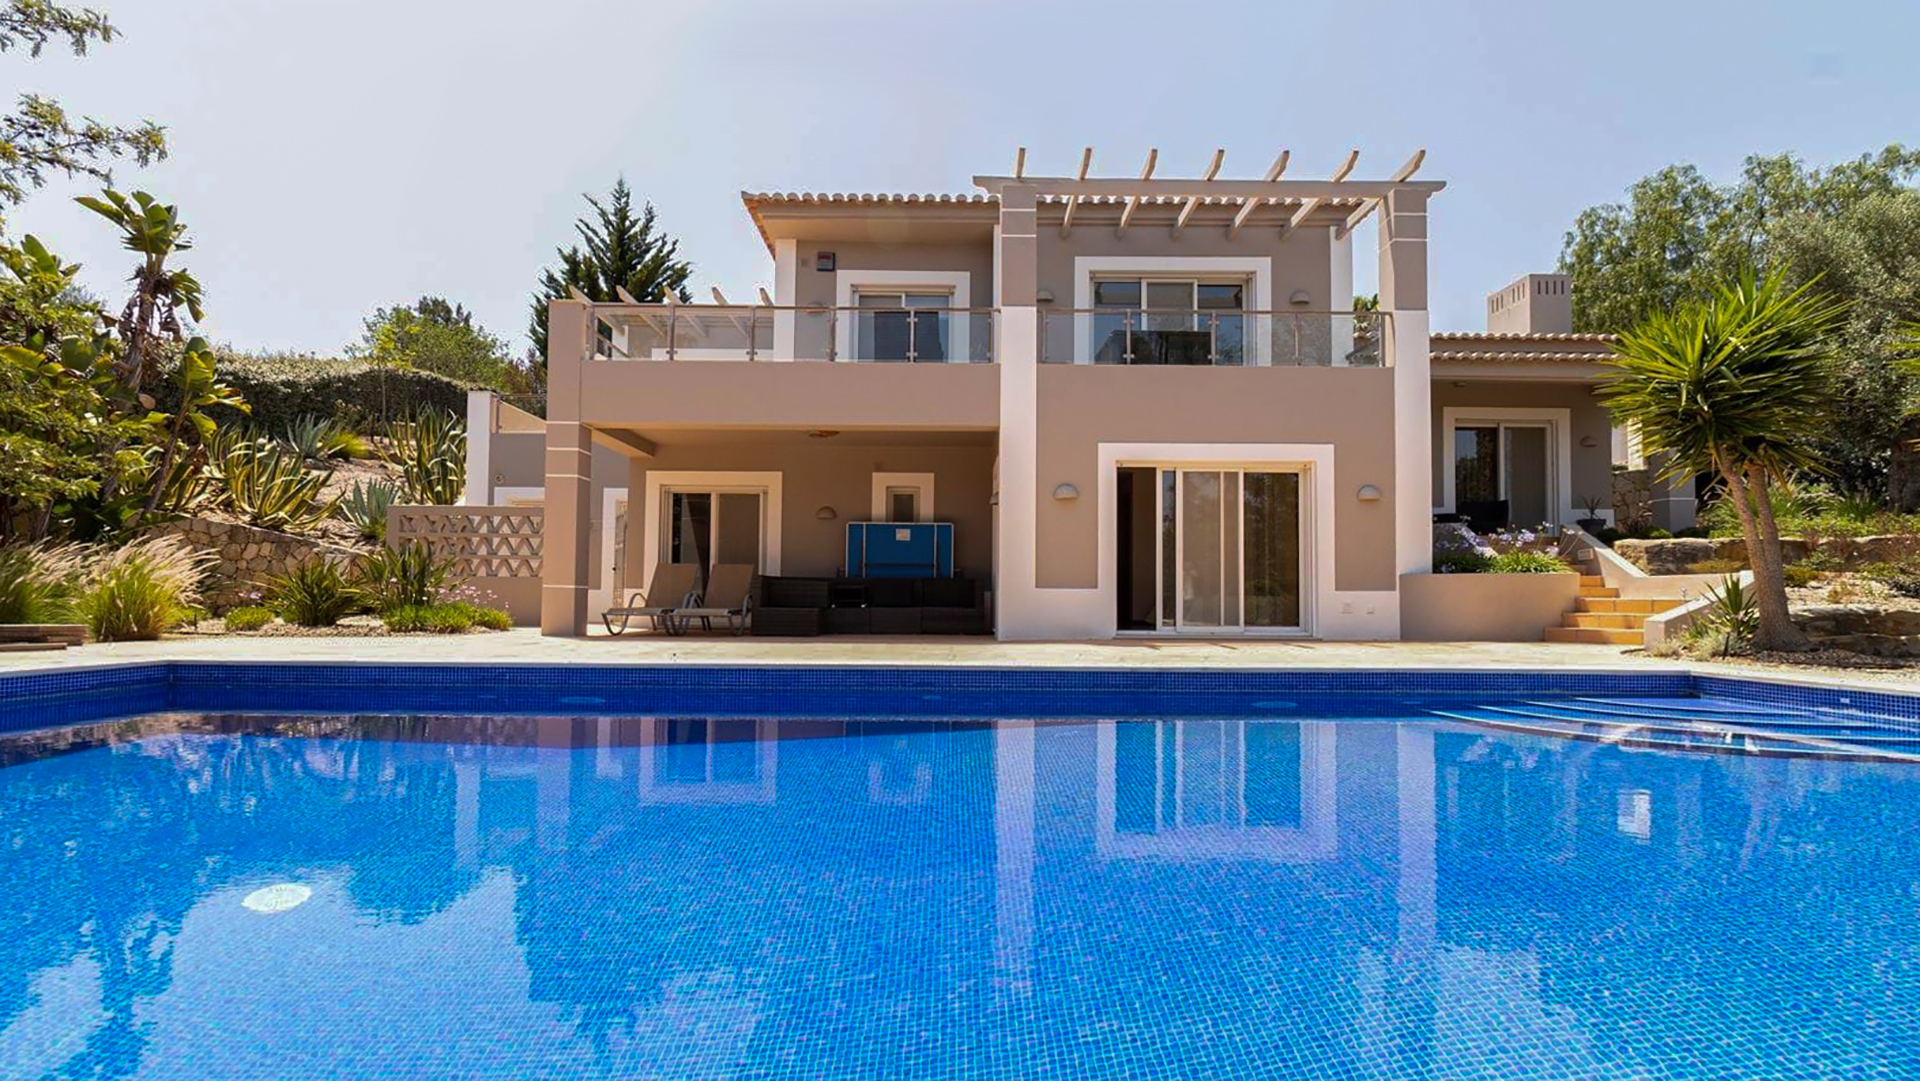 Espaçosa moradia V3 com piscina em resort de golfe perto de Carvoeiro, Algarve Barlavento | PCG2148 Moradia V3 com casas de banho privativas e piscina, rodeada por um grande jardim bem cuidado em popular resort de golfe. Perfeito como residência permanente e para alugar.